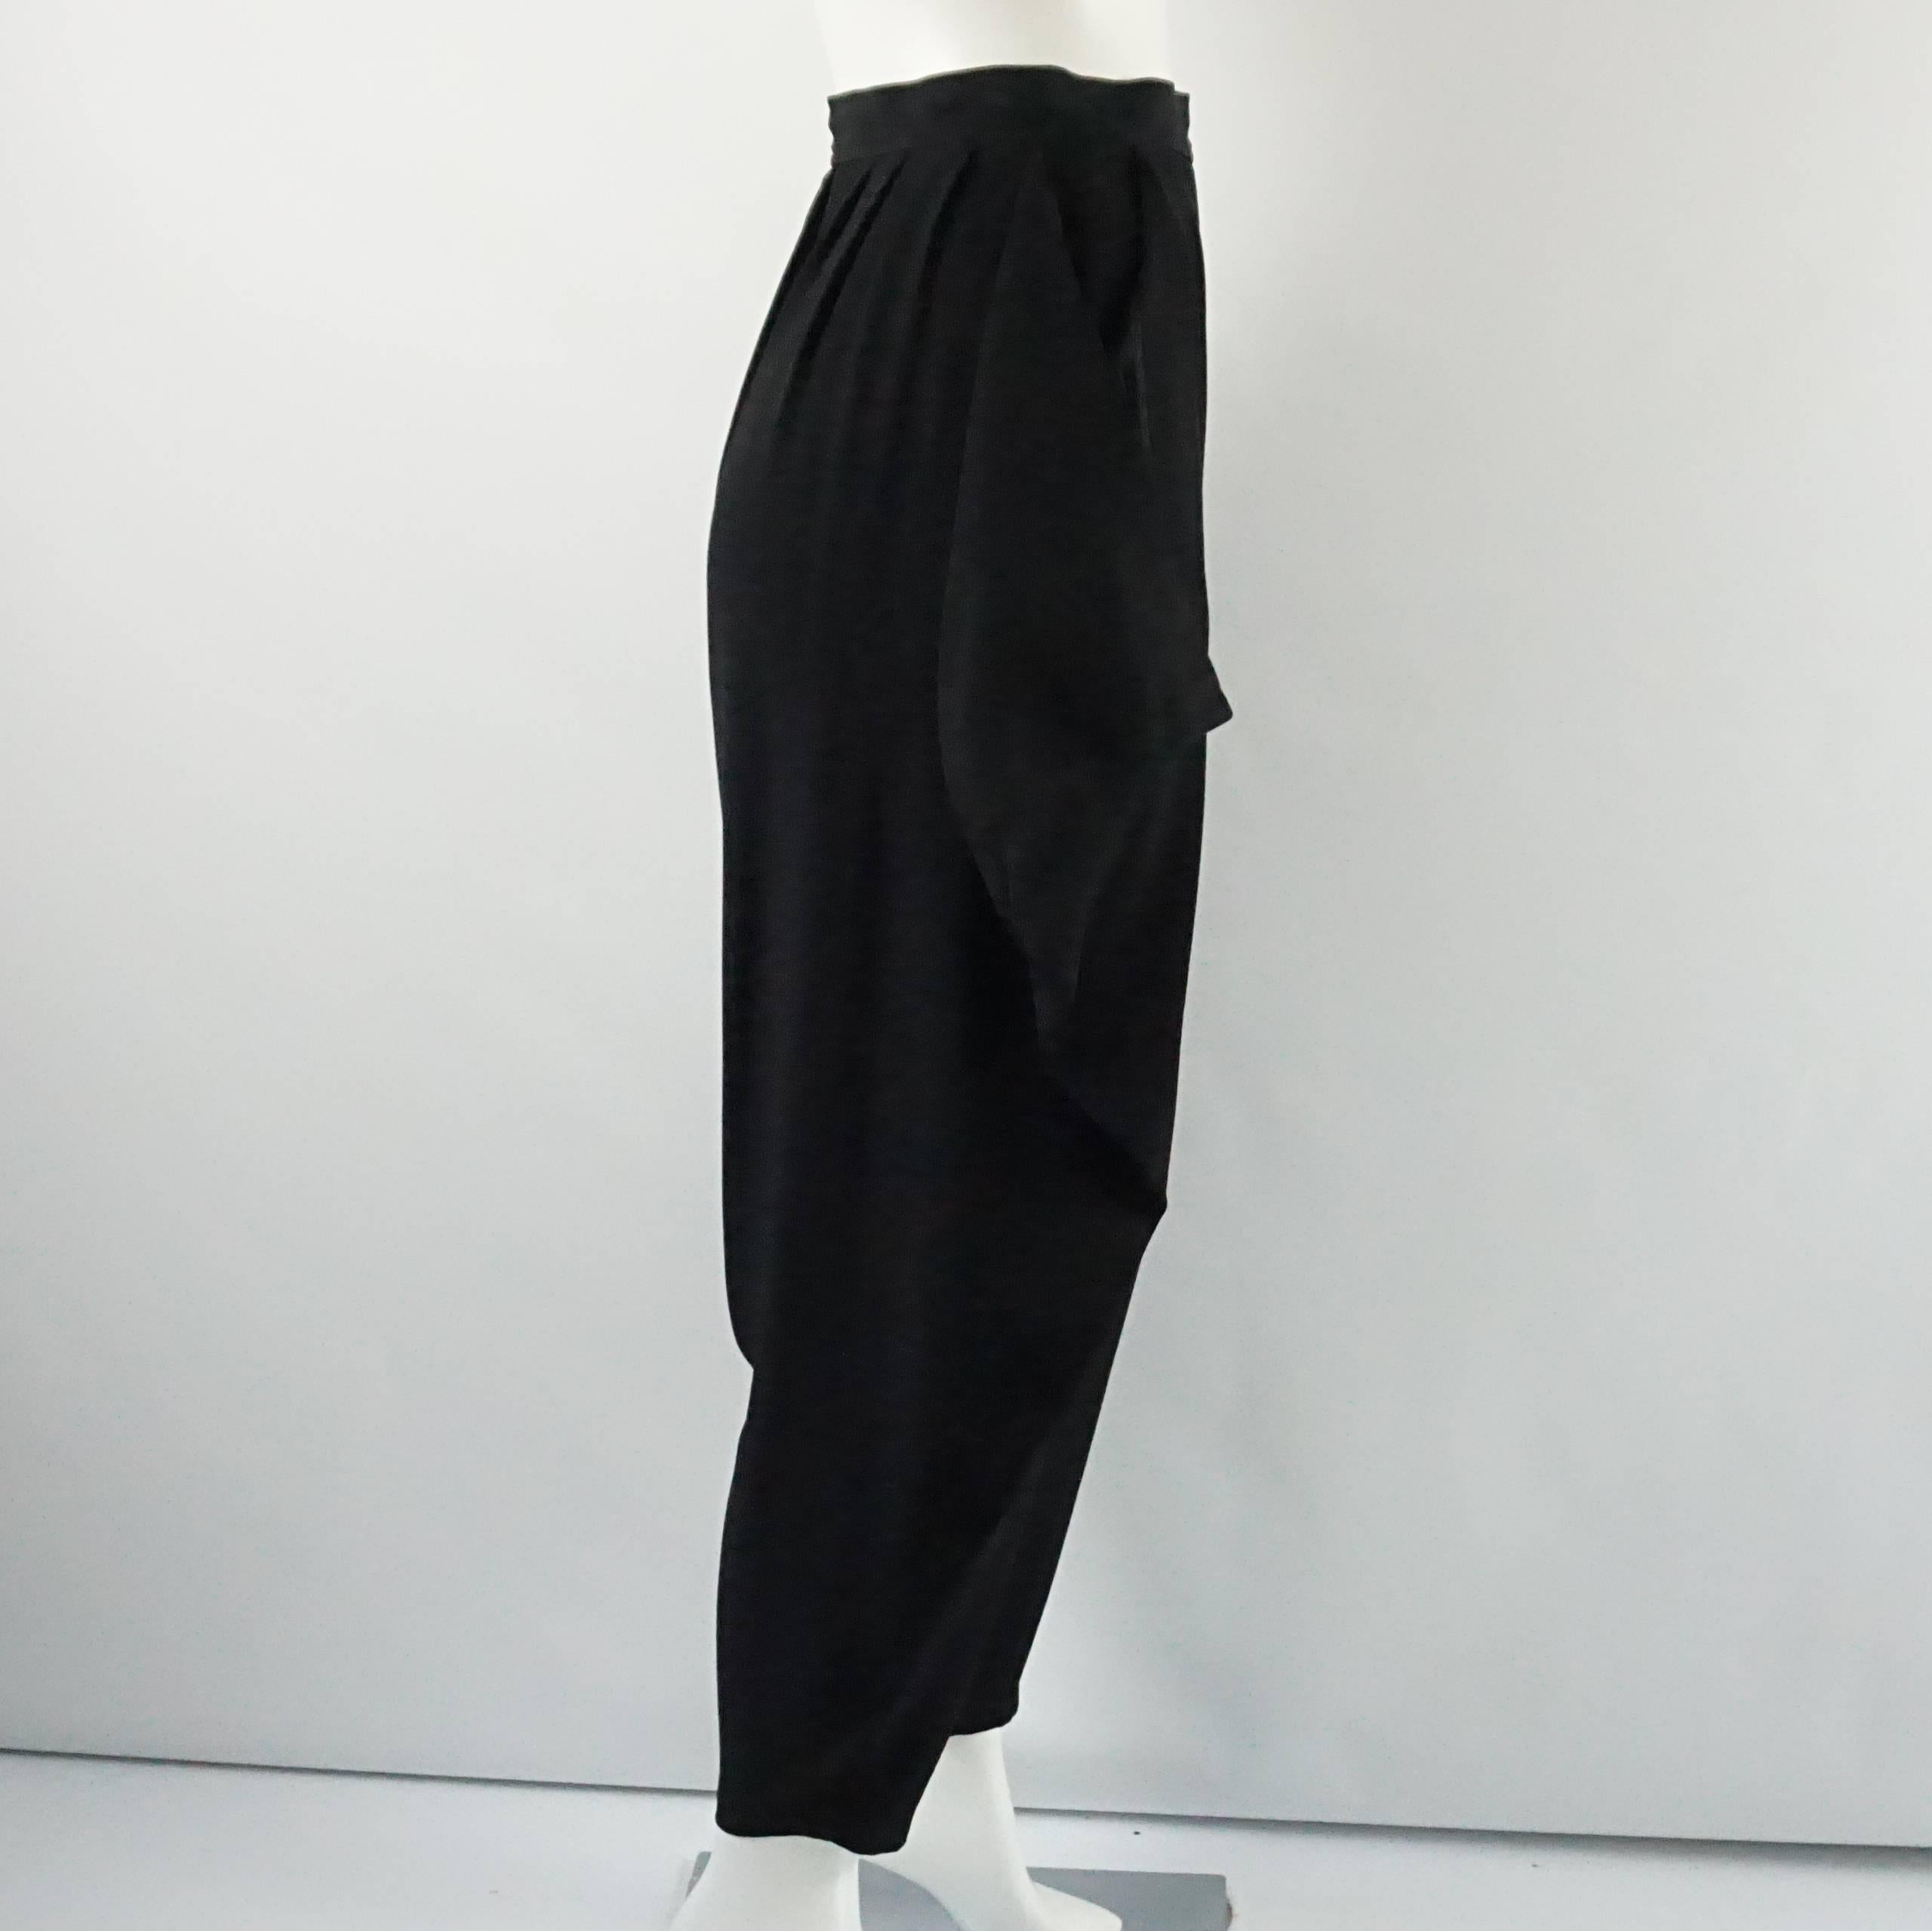 Diese schwarze Hose von YSL ist aus Wolle gefertigt. Sie haben eine hohe Taille und sind im Haremsstil mit Rüschen an den Seiten gearbeitet. Die Hose ist in einem ausgezeichneten Vintage-Zustand mit sehr geringen allgemeinen Verschleiß an den Stoff.